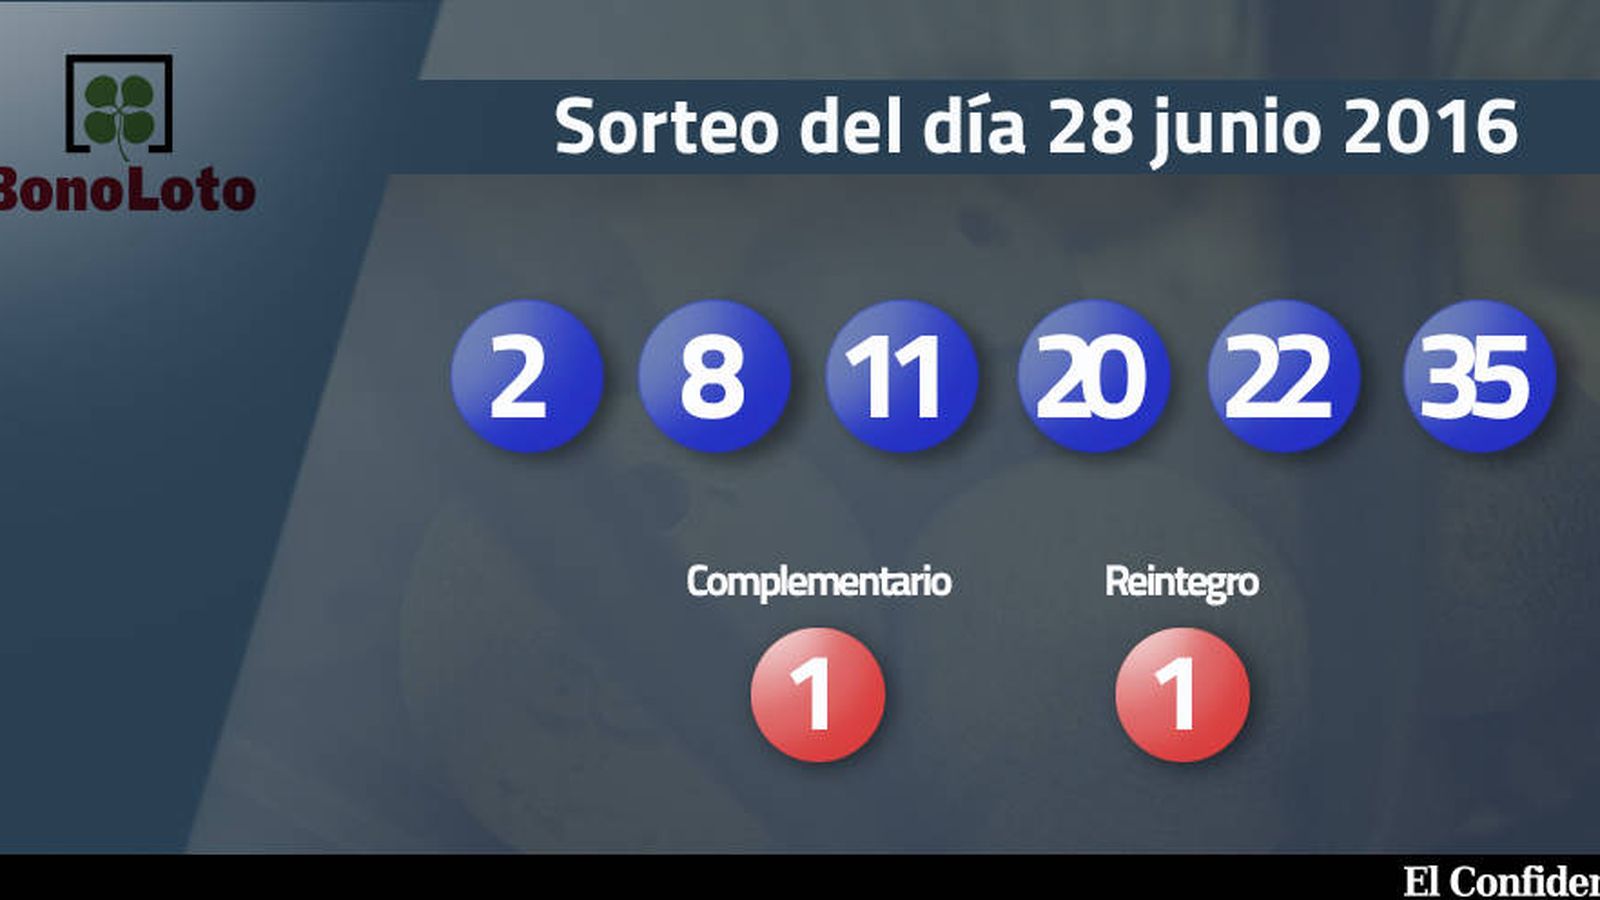 Foto: Resultados del sorteo de la Bonoloto del 28 junio 2016 (EC)